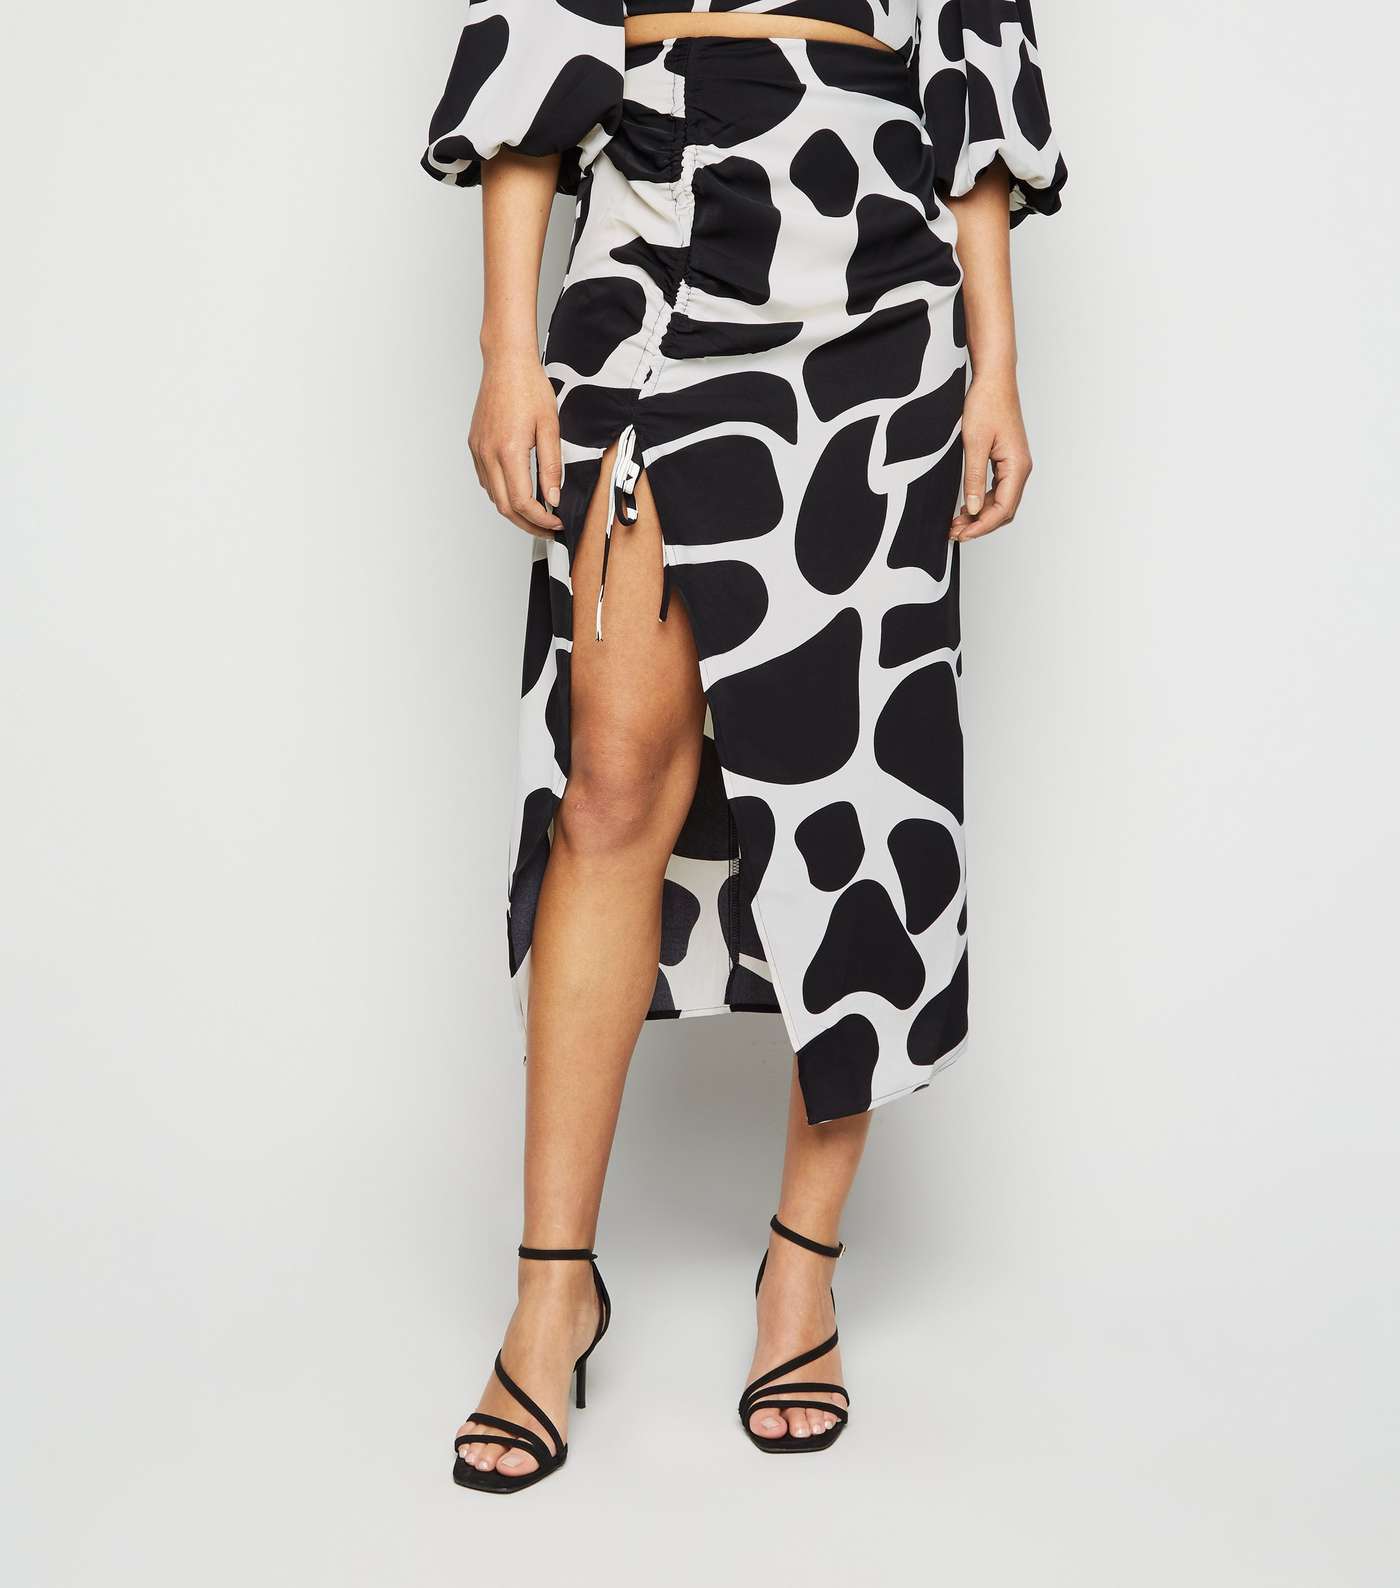 Urban Bliss Black Giraffe Print Split Midi Skirt Image 2